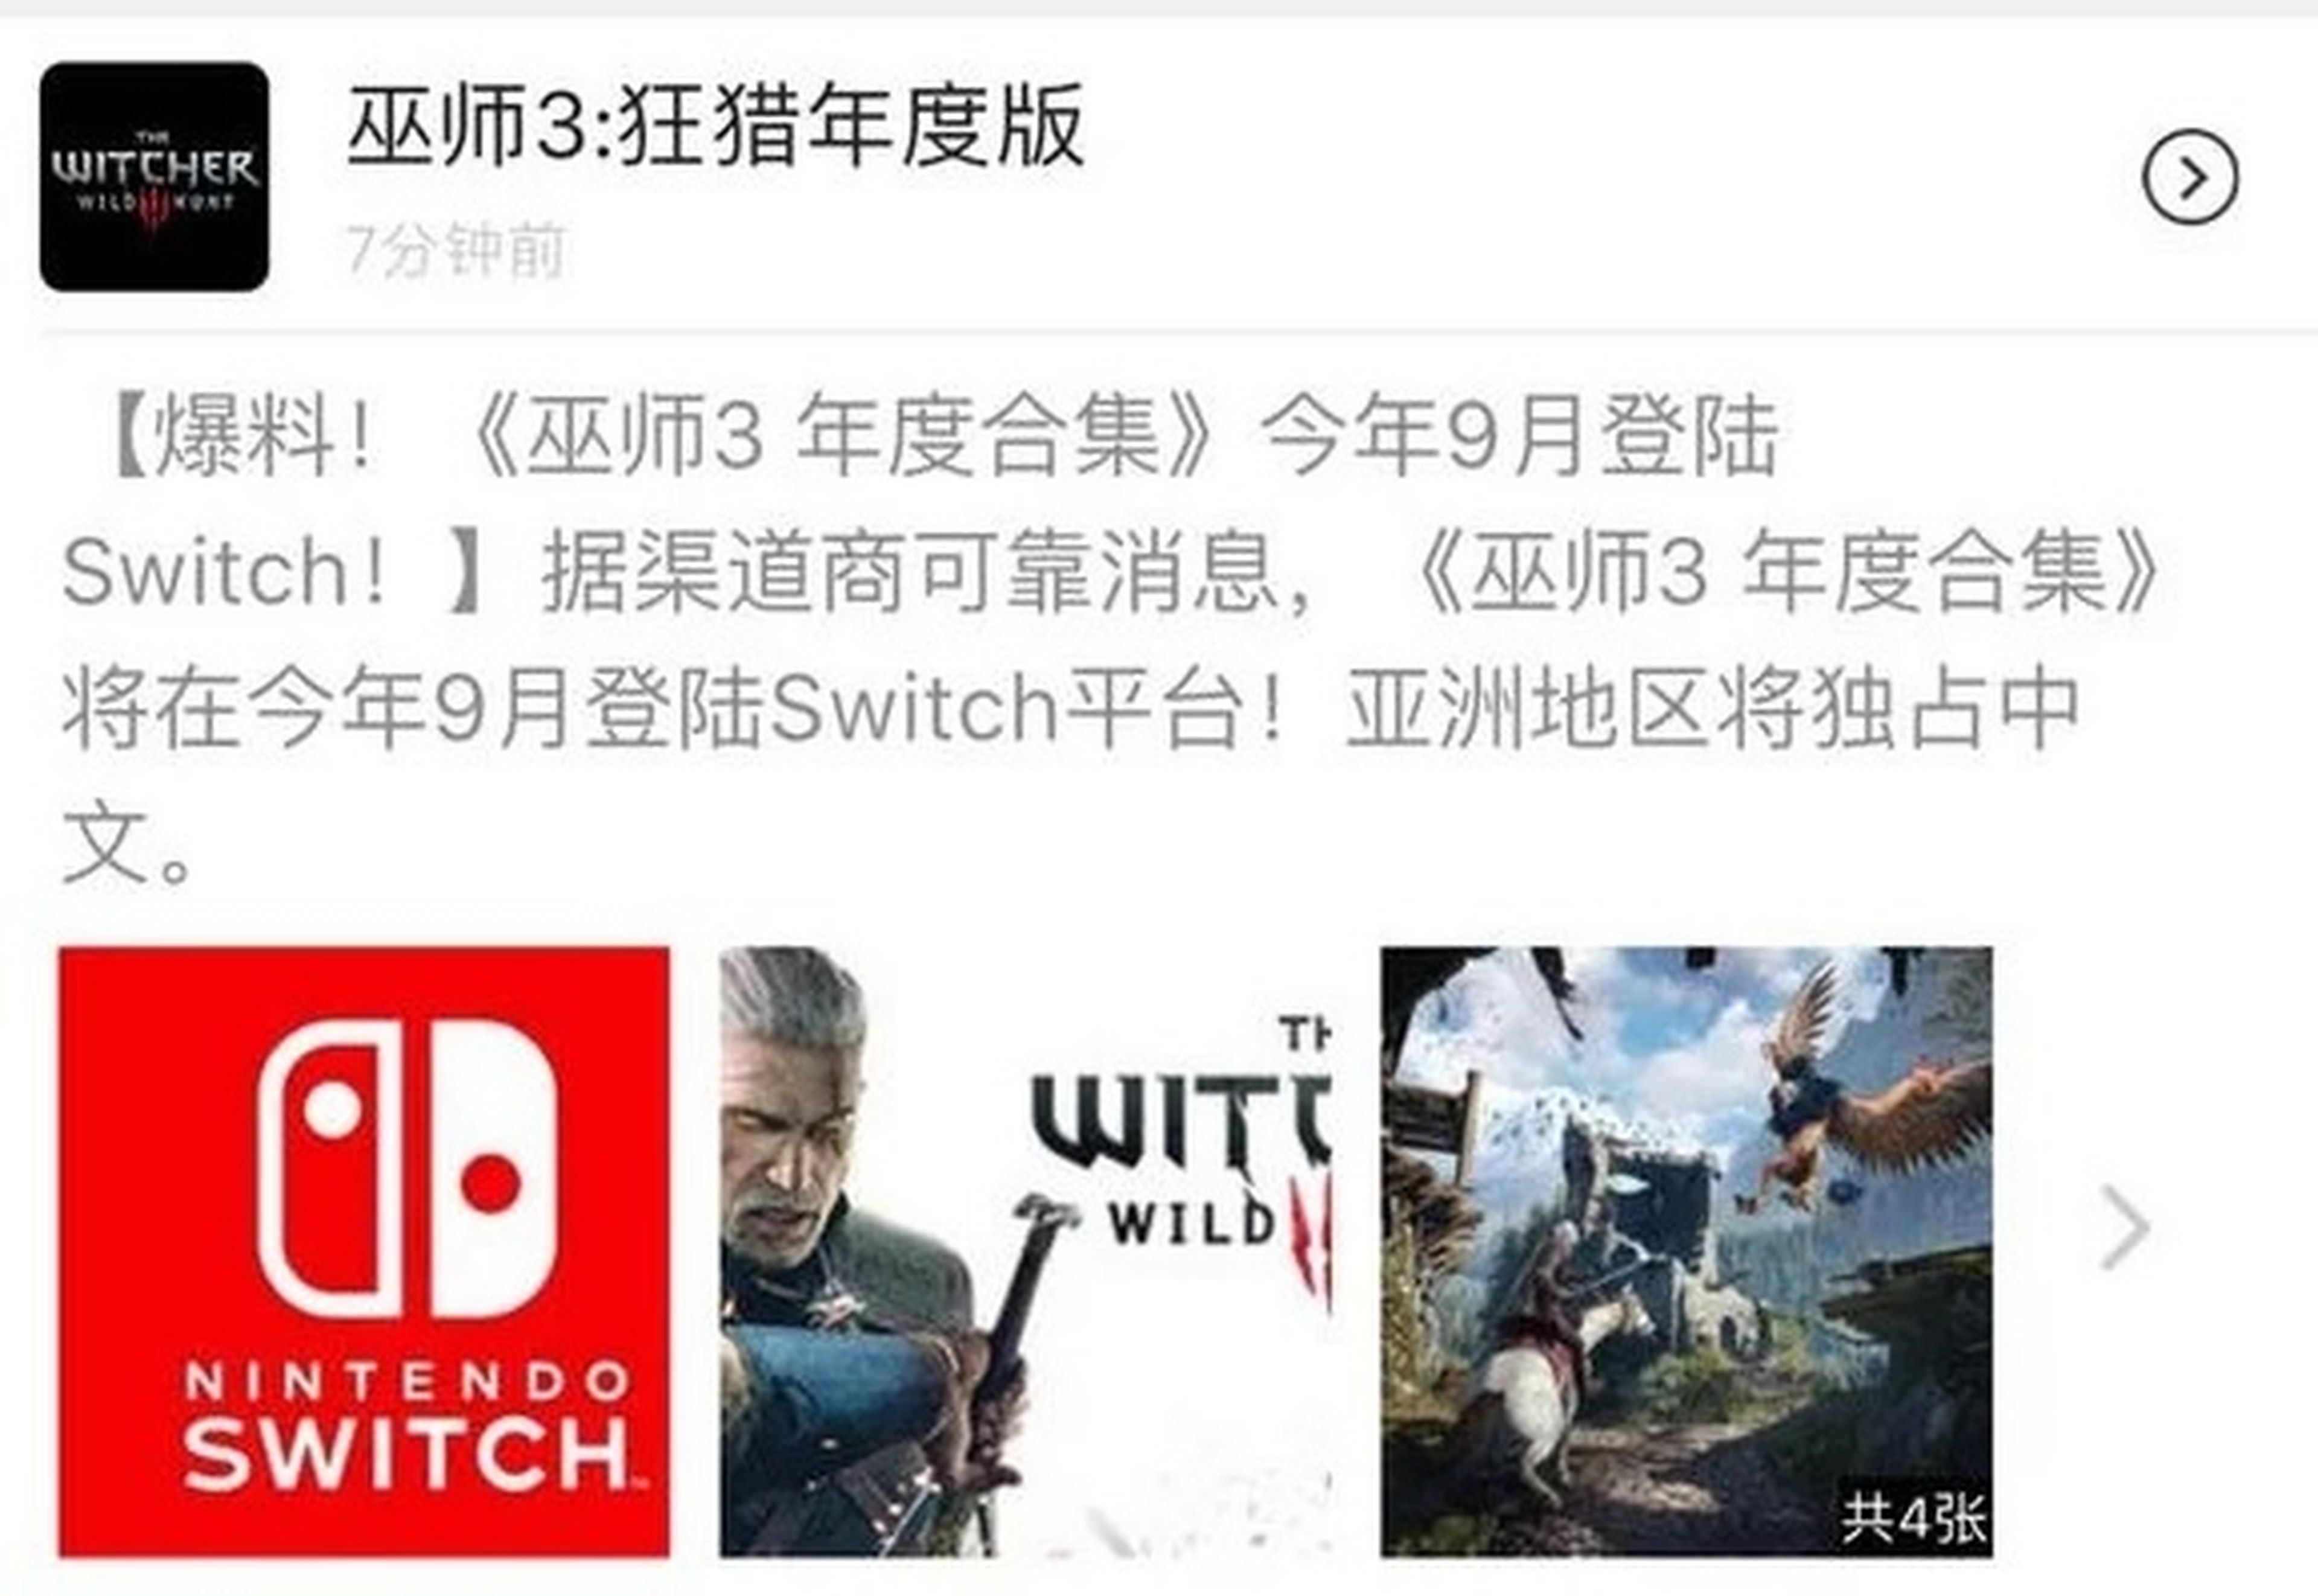 Witcher 3 Switch